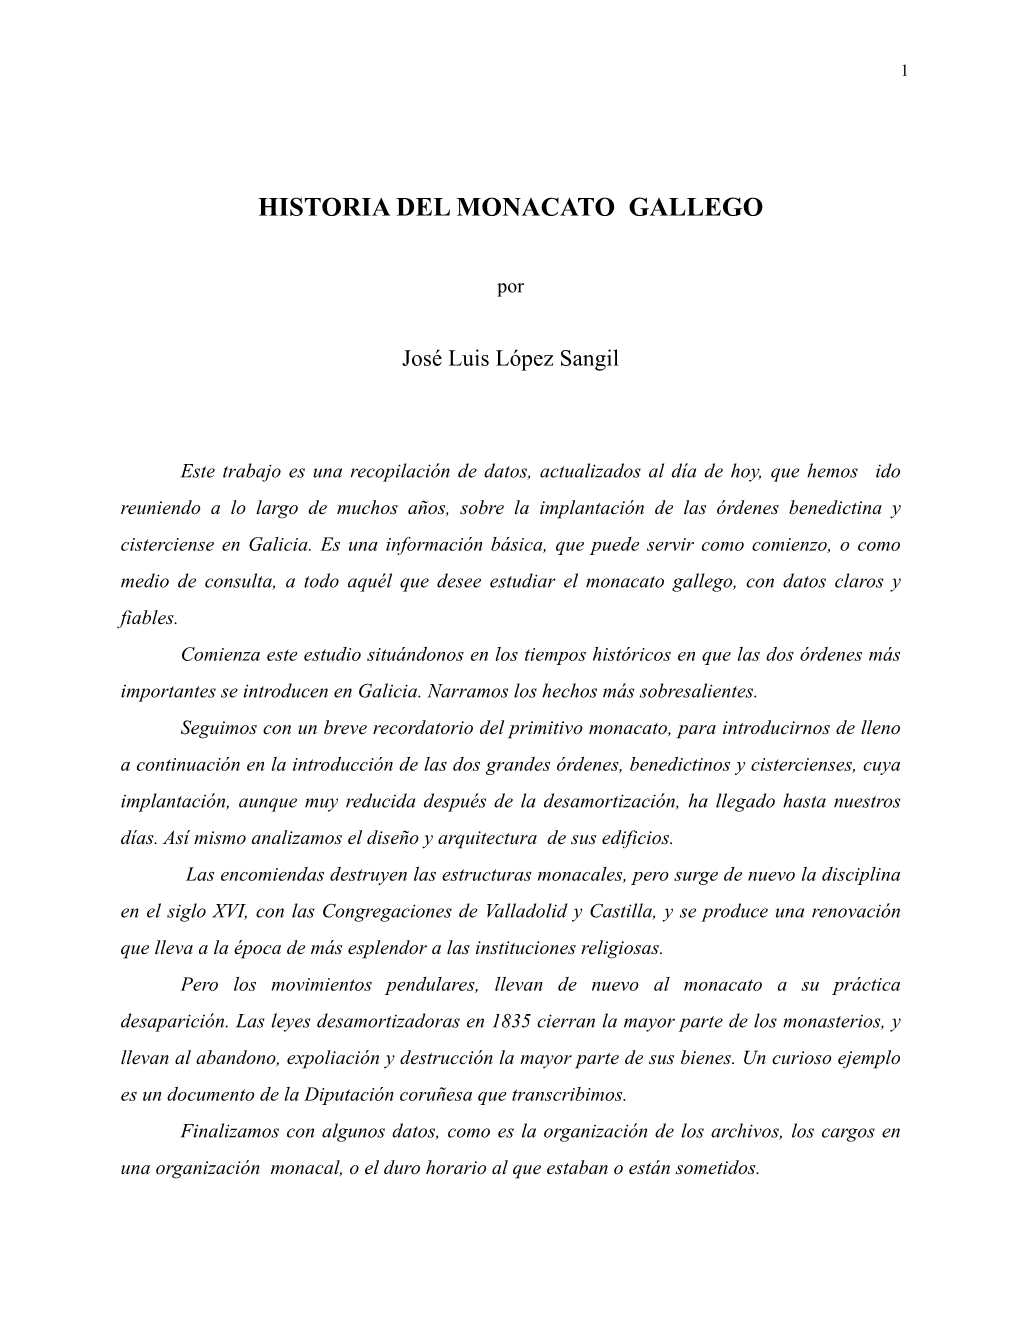 Historia Del Monacato Gallego